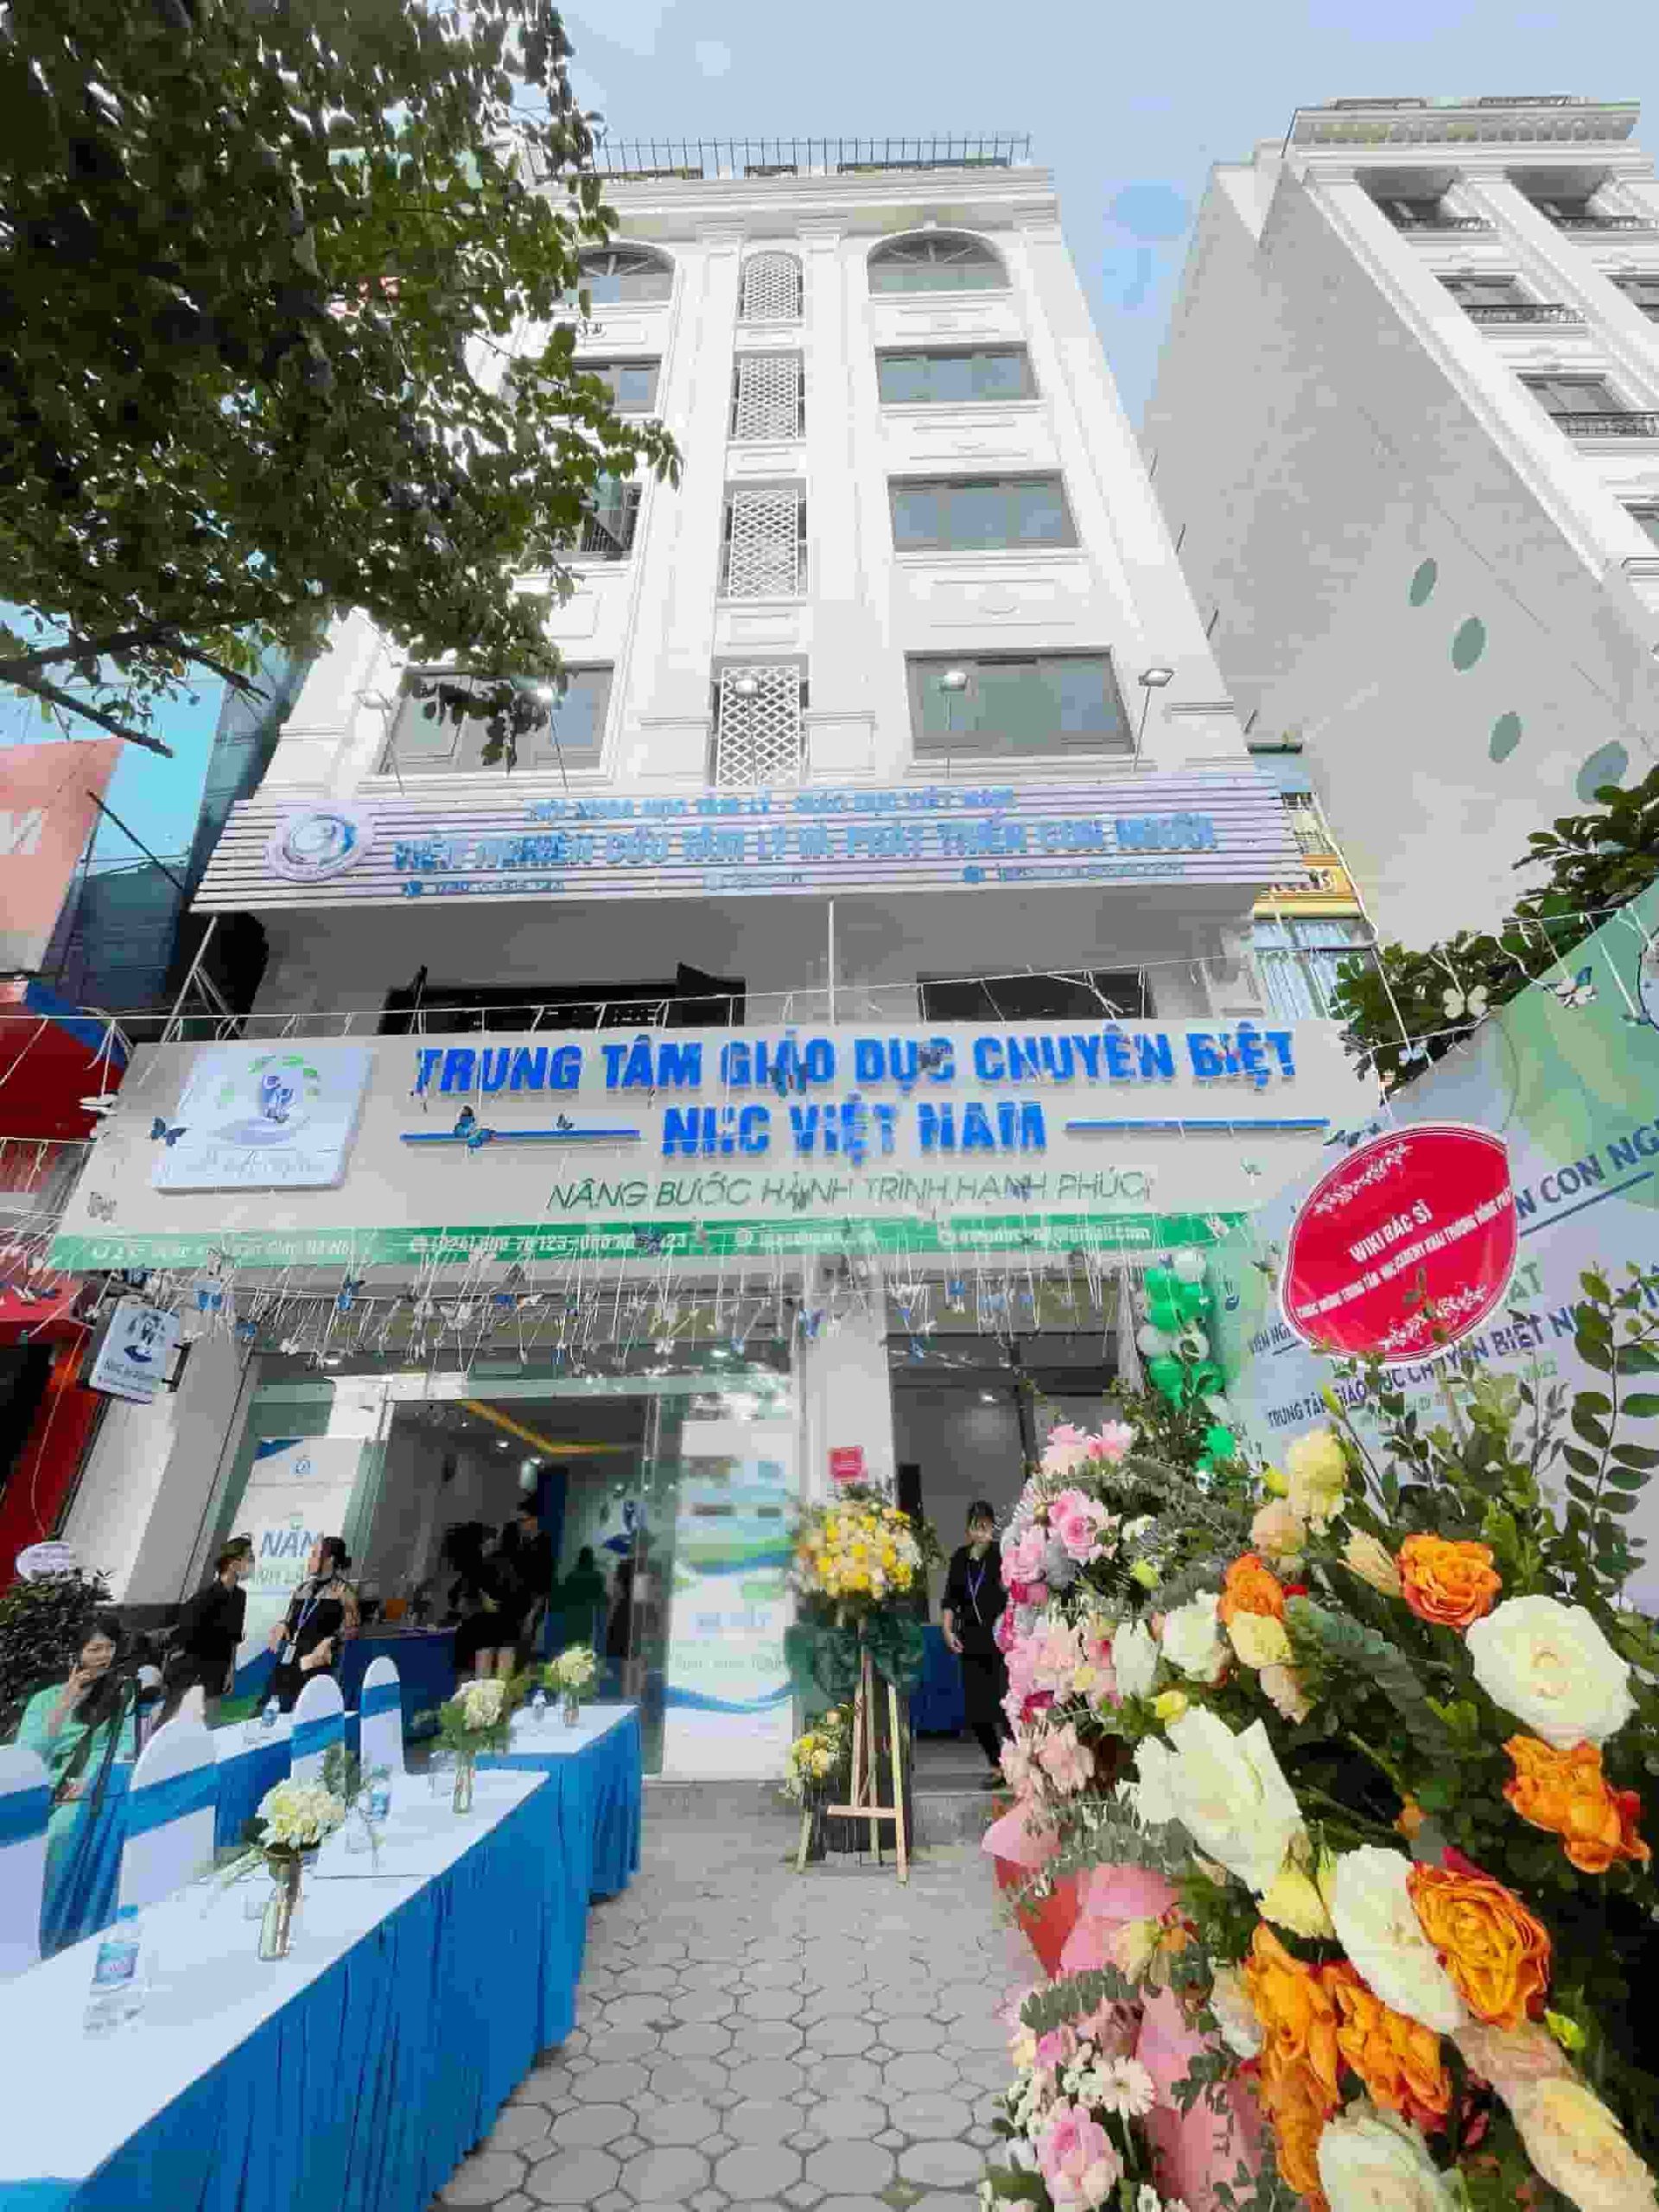 Trung tâm Giáo dục Chuyên biệt NHC Việt Nam đơn vị tiên phong can thiệp trẻ chậm nói và trẻ đặc biệt chuẩn quốc tế